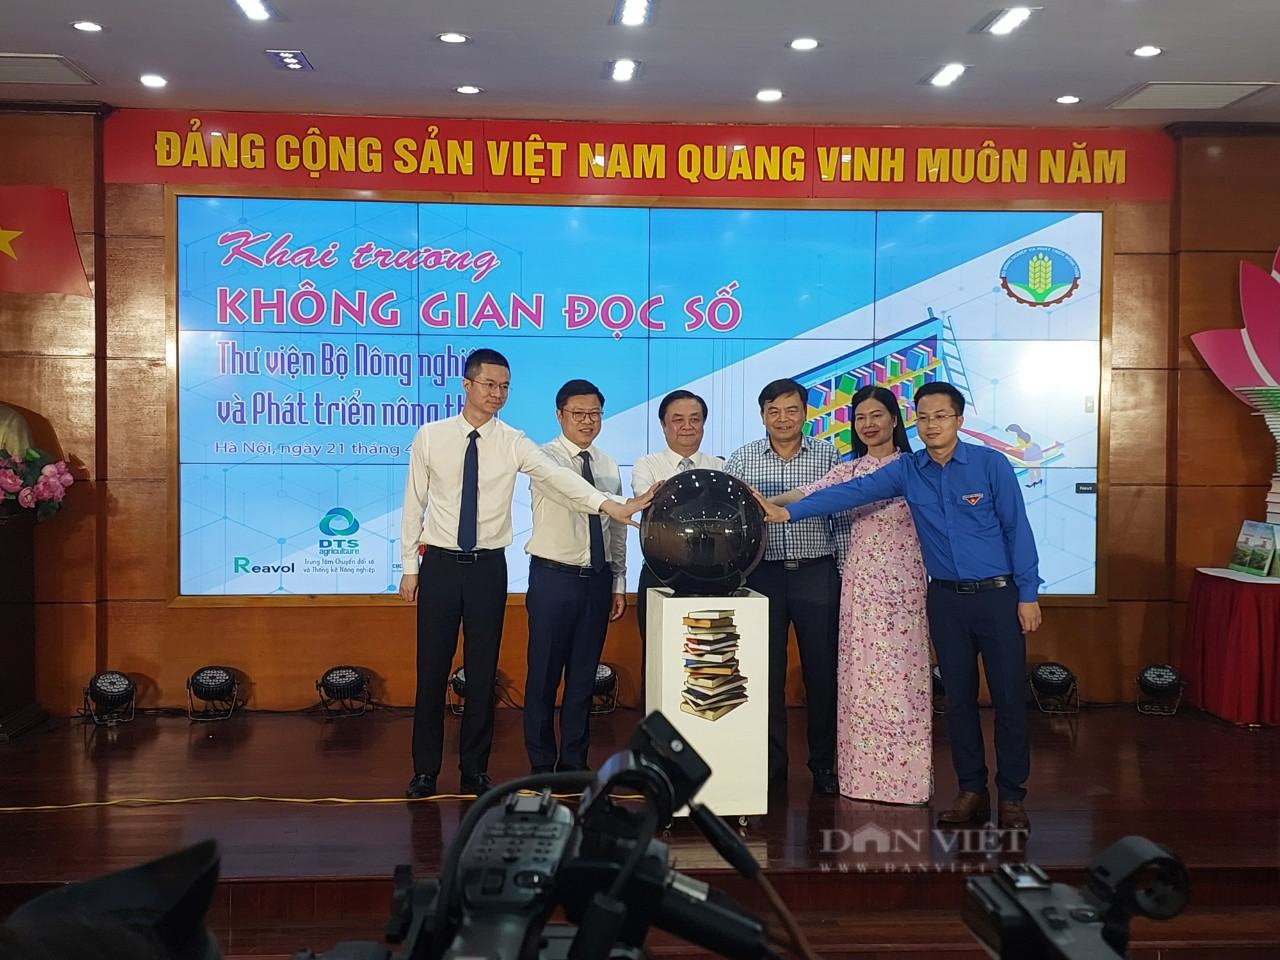 Hưởng ứng Ngày Sách và Văn hóa đọc Việt Nam, Bộ NNPTNT khai trương không gian đọc số - Ảnh 1.